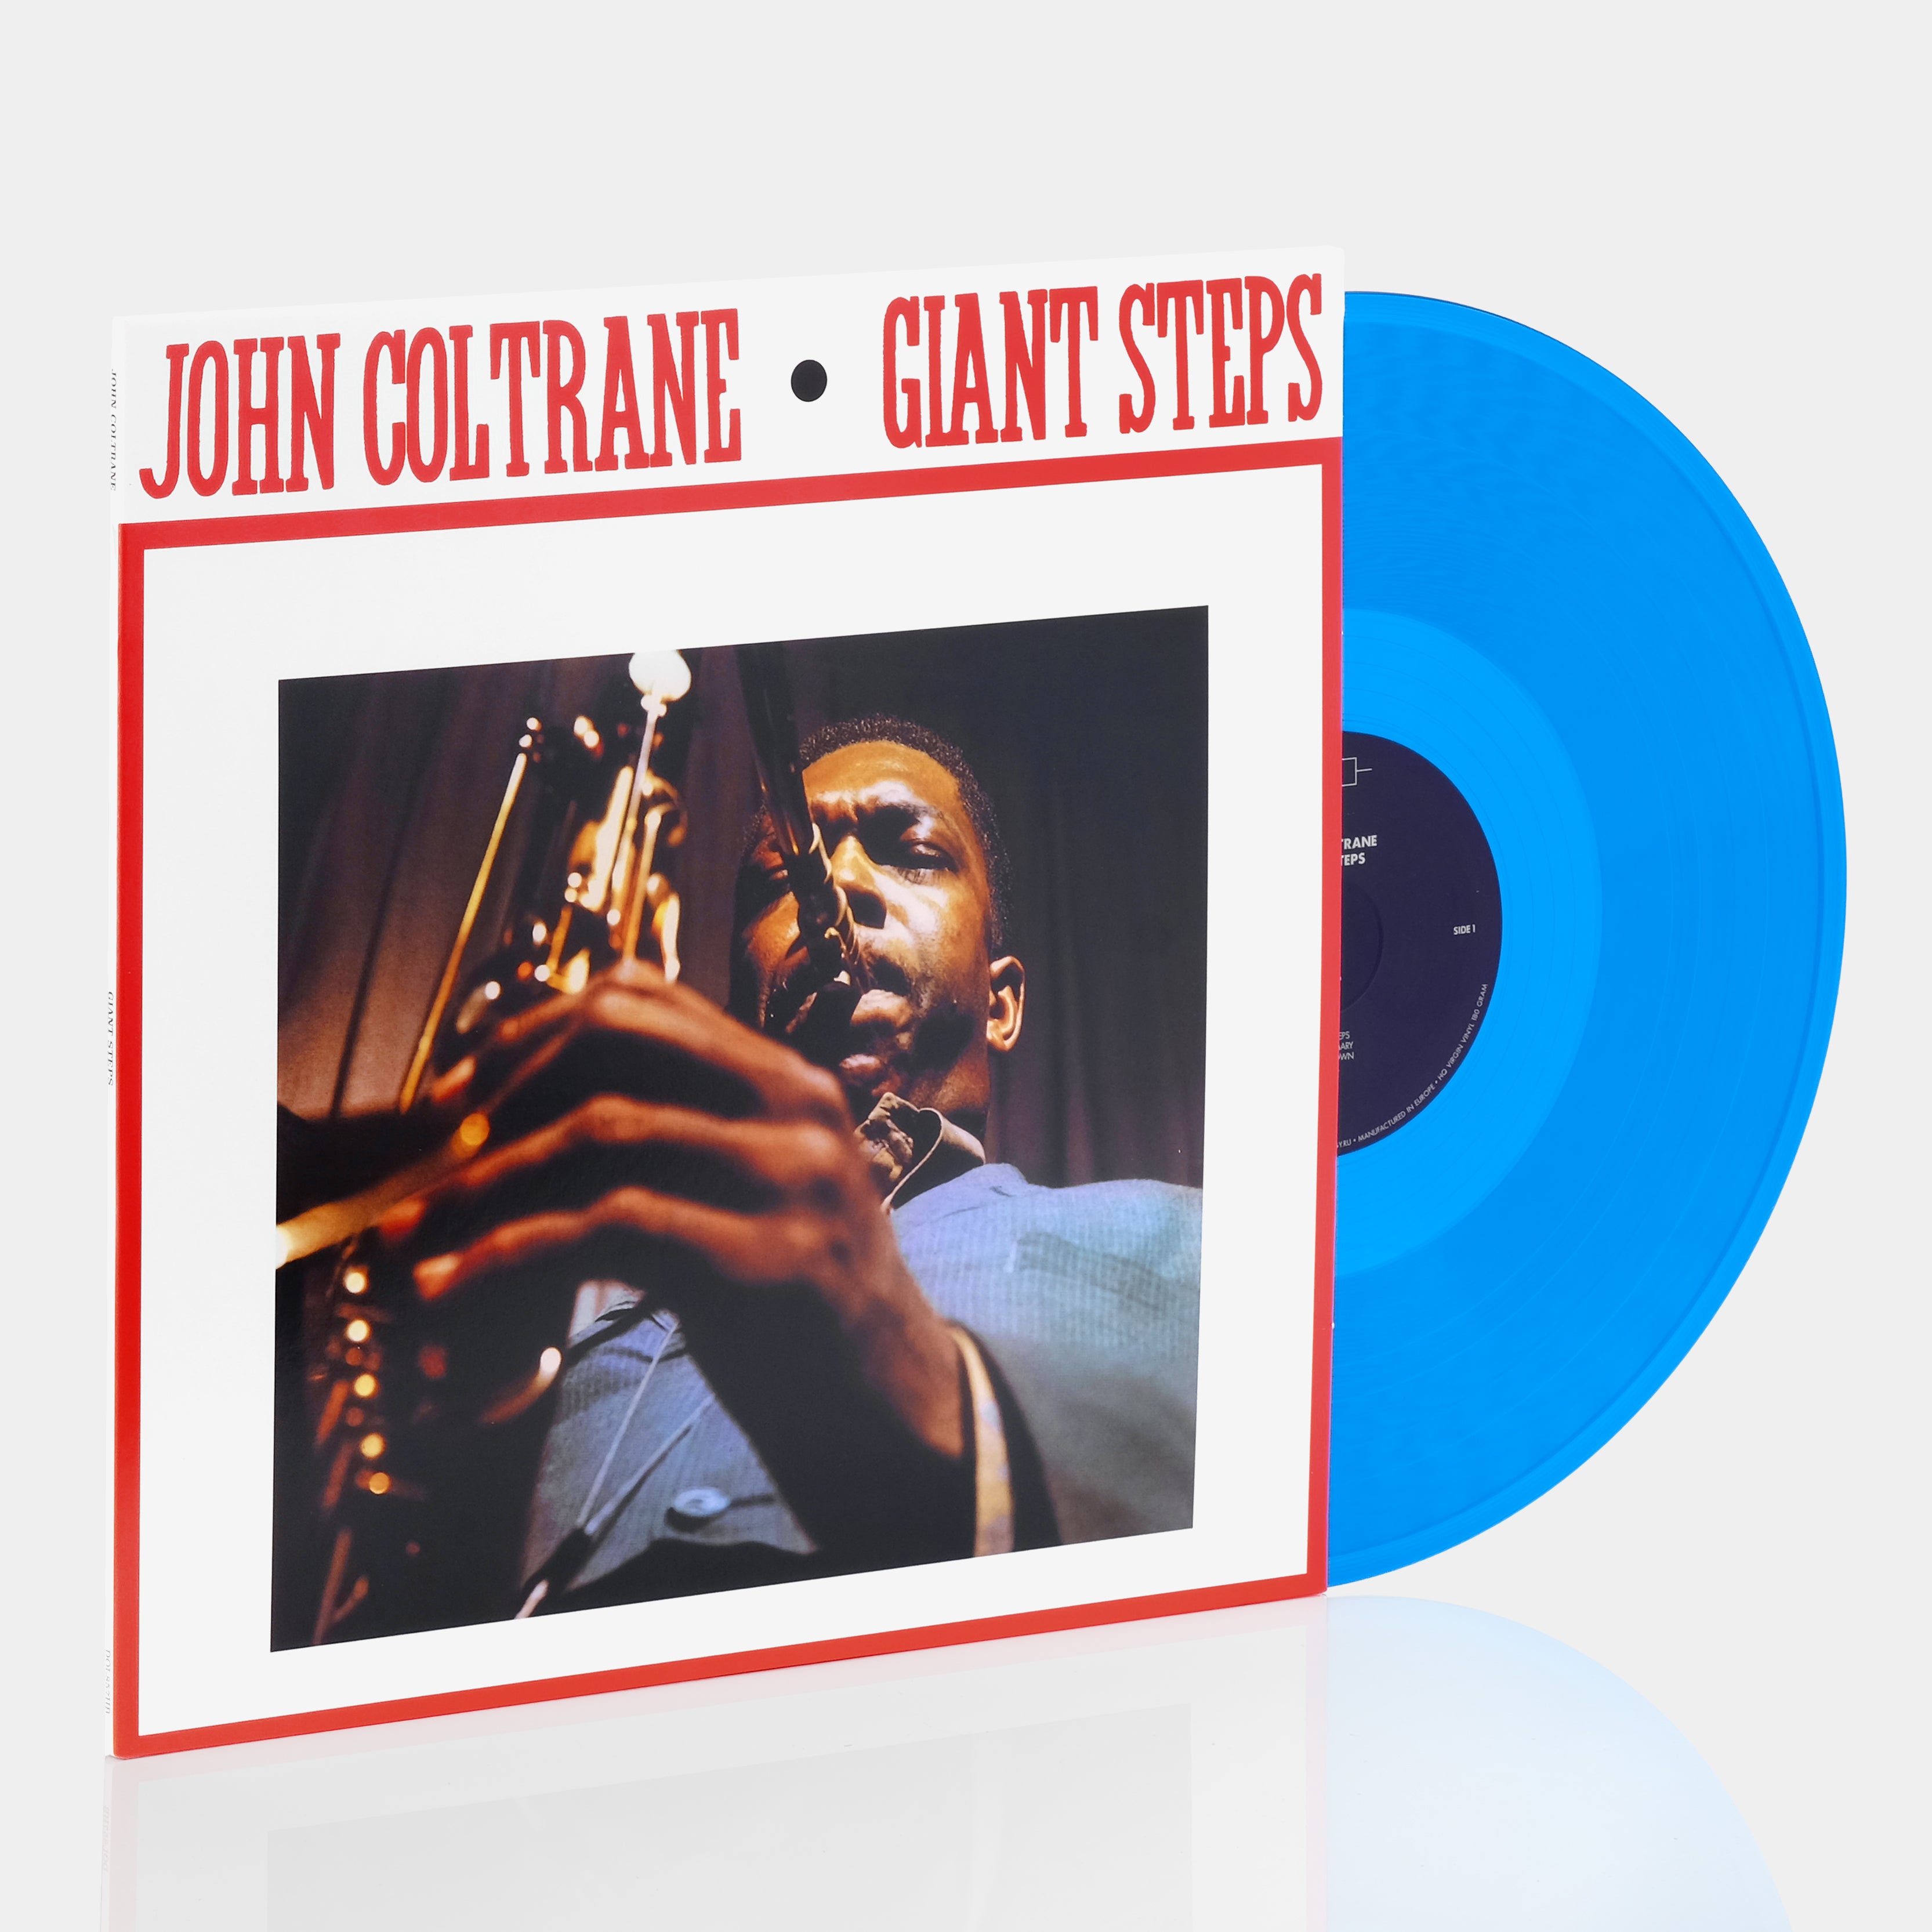 John Coltrane - Giant Steps LP Blue Vinyl Record